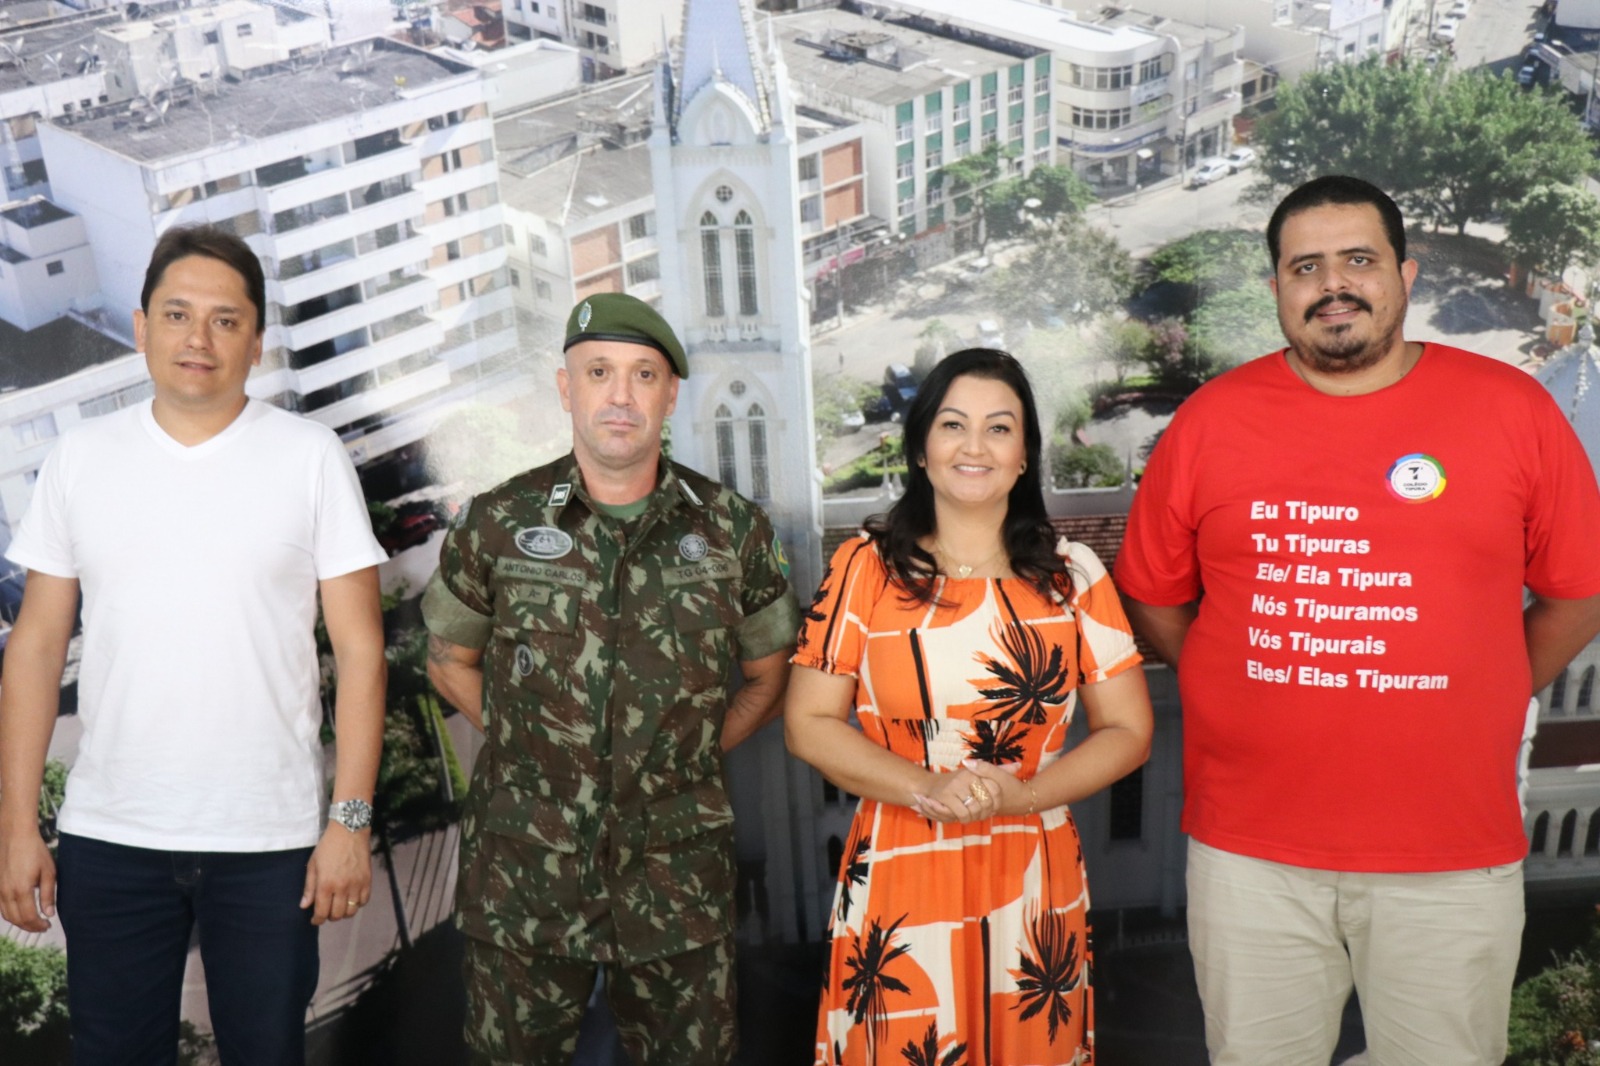 Legislativo renova parceria com Tiro de Guerra e planeja ações para a comunidade.